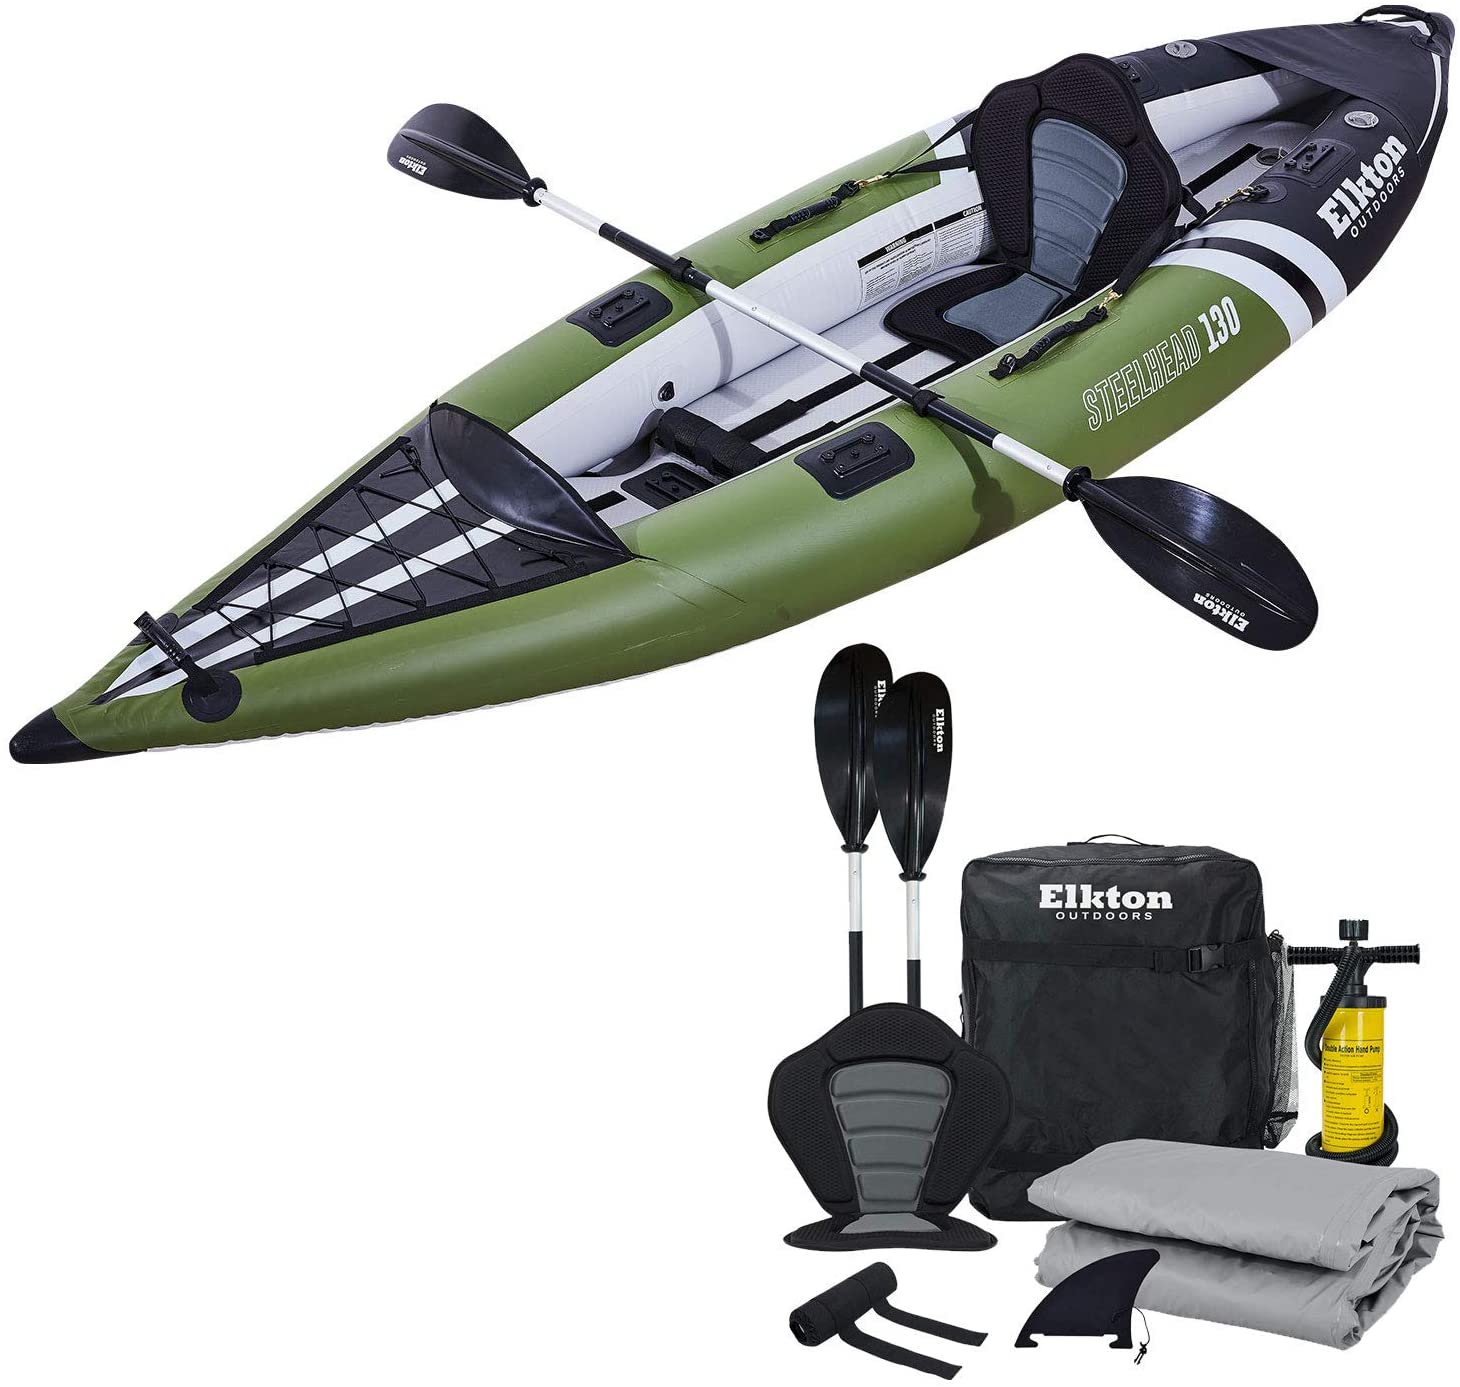 Los 12 mejores SUP inflables, flotadores y kayaks en Amazon - 45